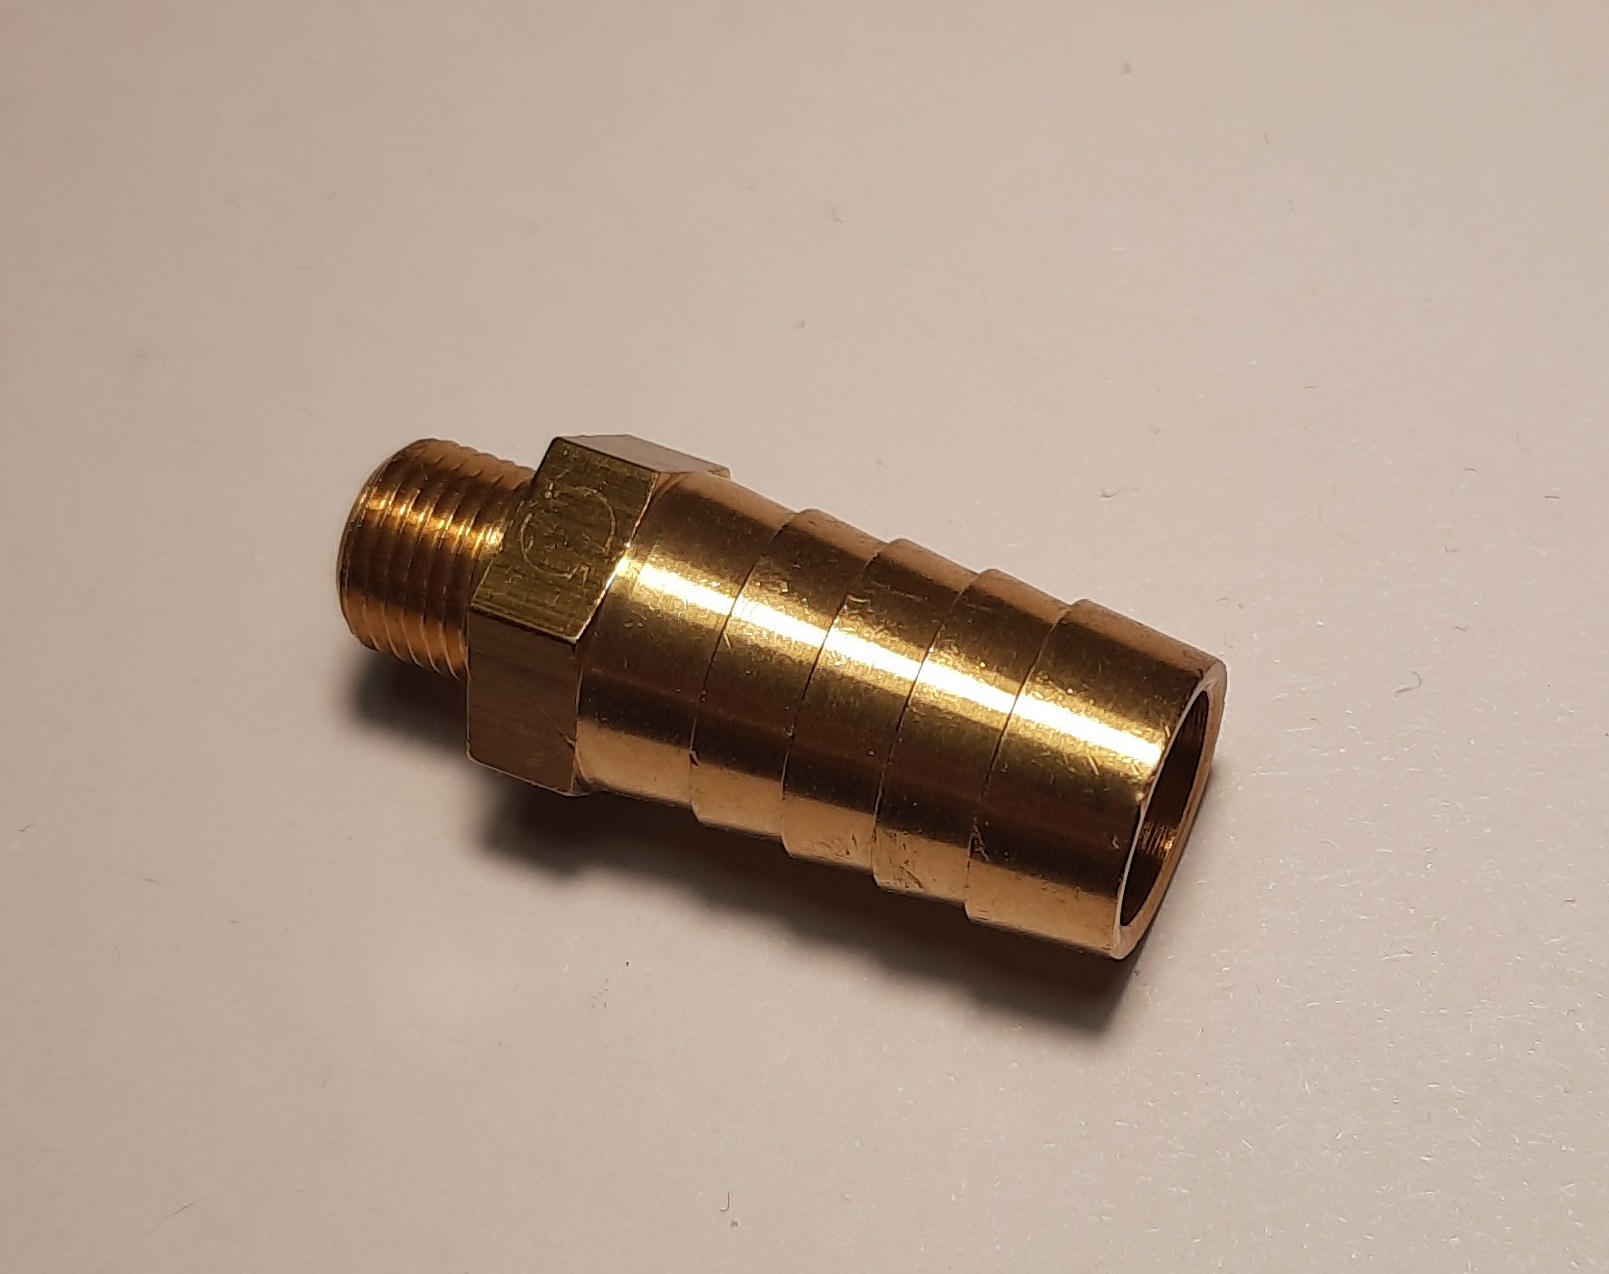 Штуцер из латуни, резьба: наружная G1/8, диаметр трубки штуцера 14 мм